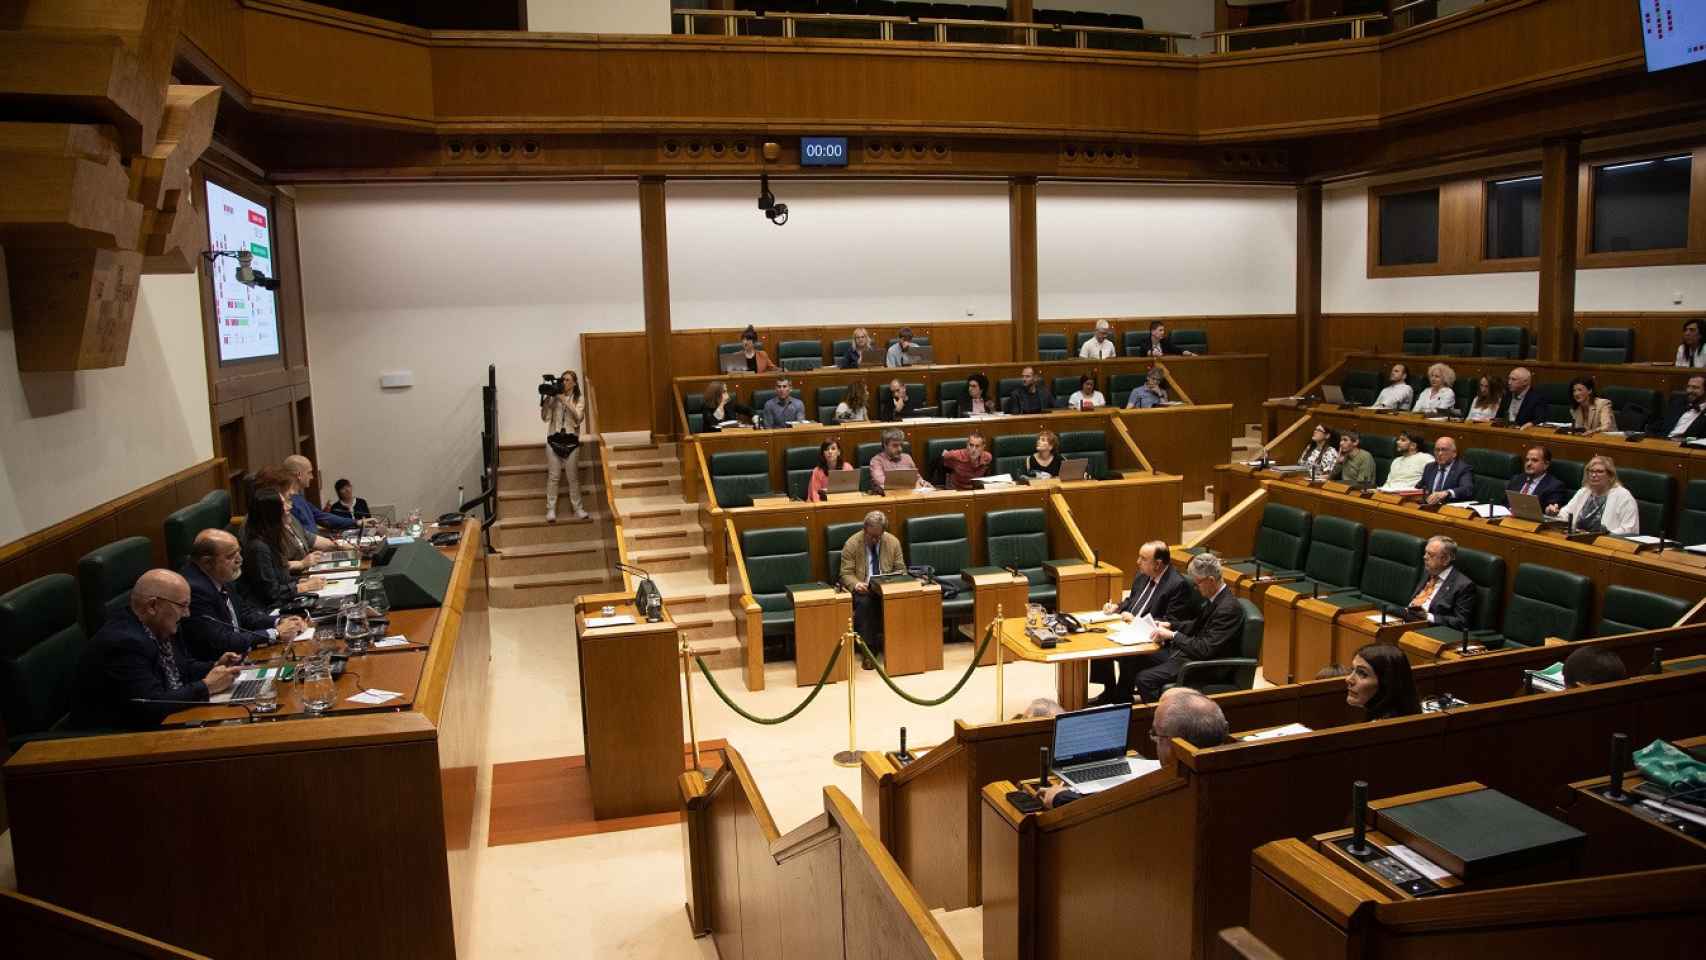 El Parlamento vasco durante una sesión ordinaria / Legebiltzarra